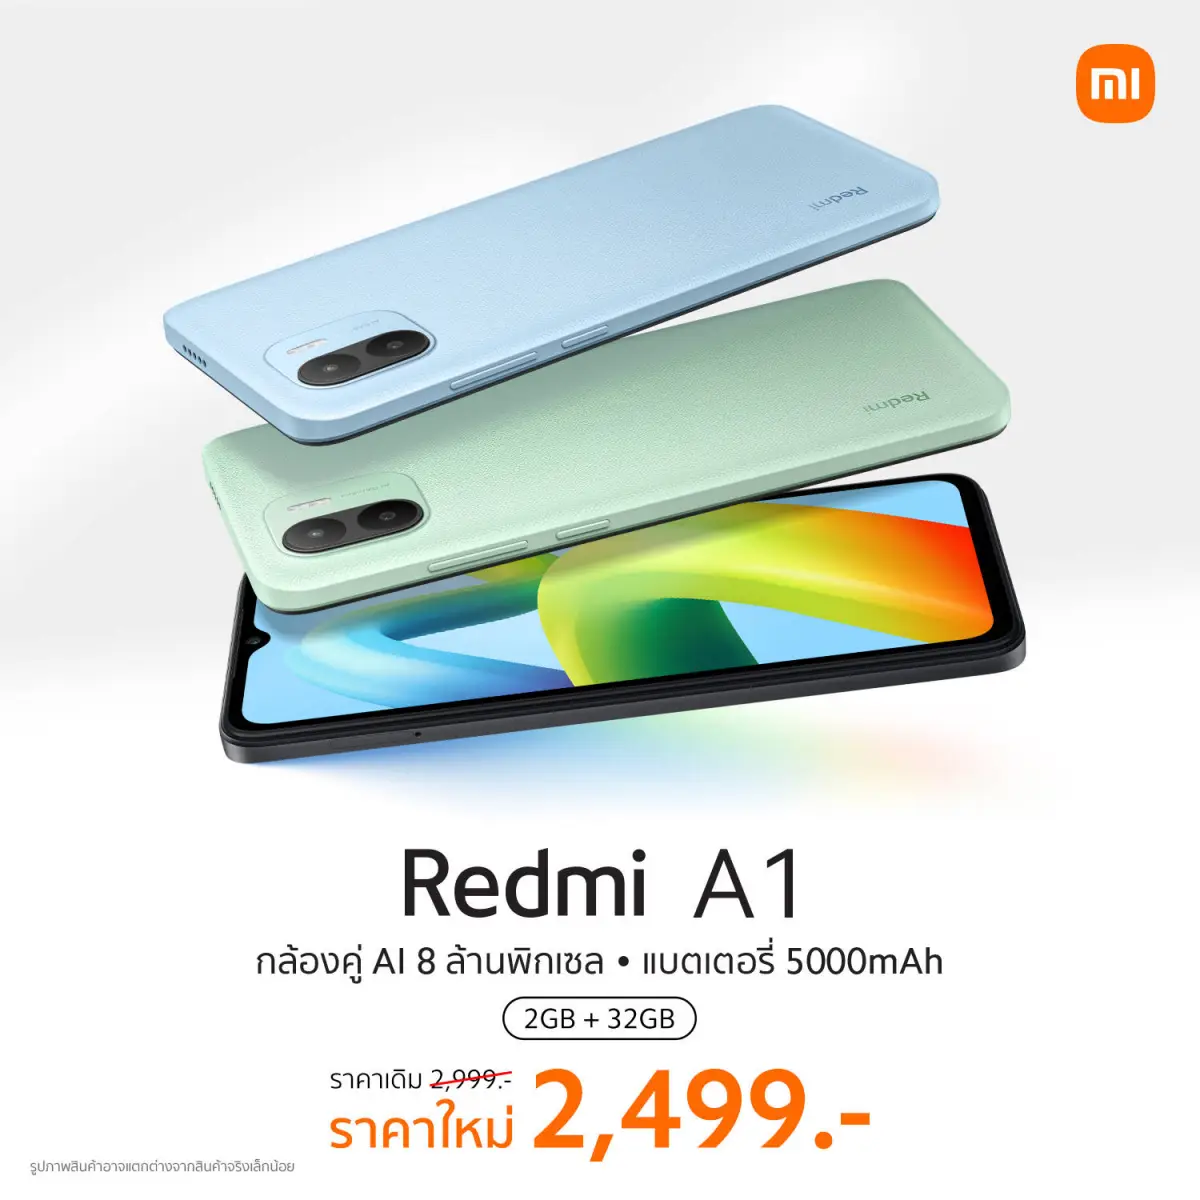 Redmi A1 สมาร์ทโฟนกล้องคู่ แบต 5000mAh ราคา ใหม่ 2,499 บาท